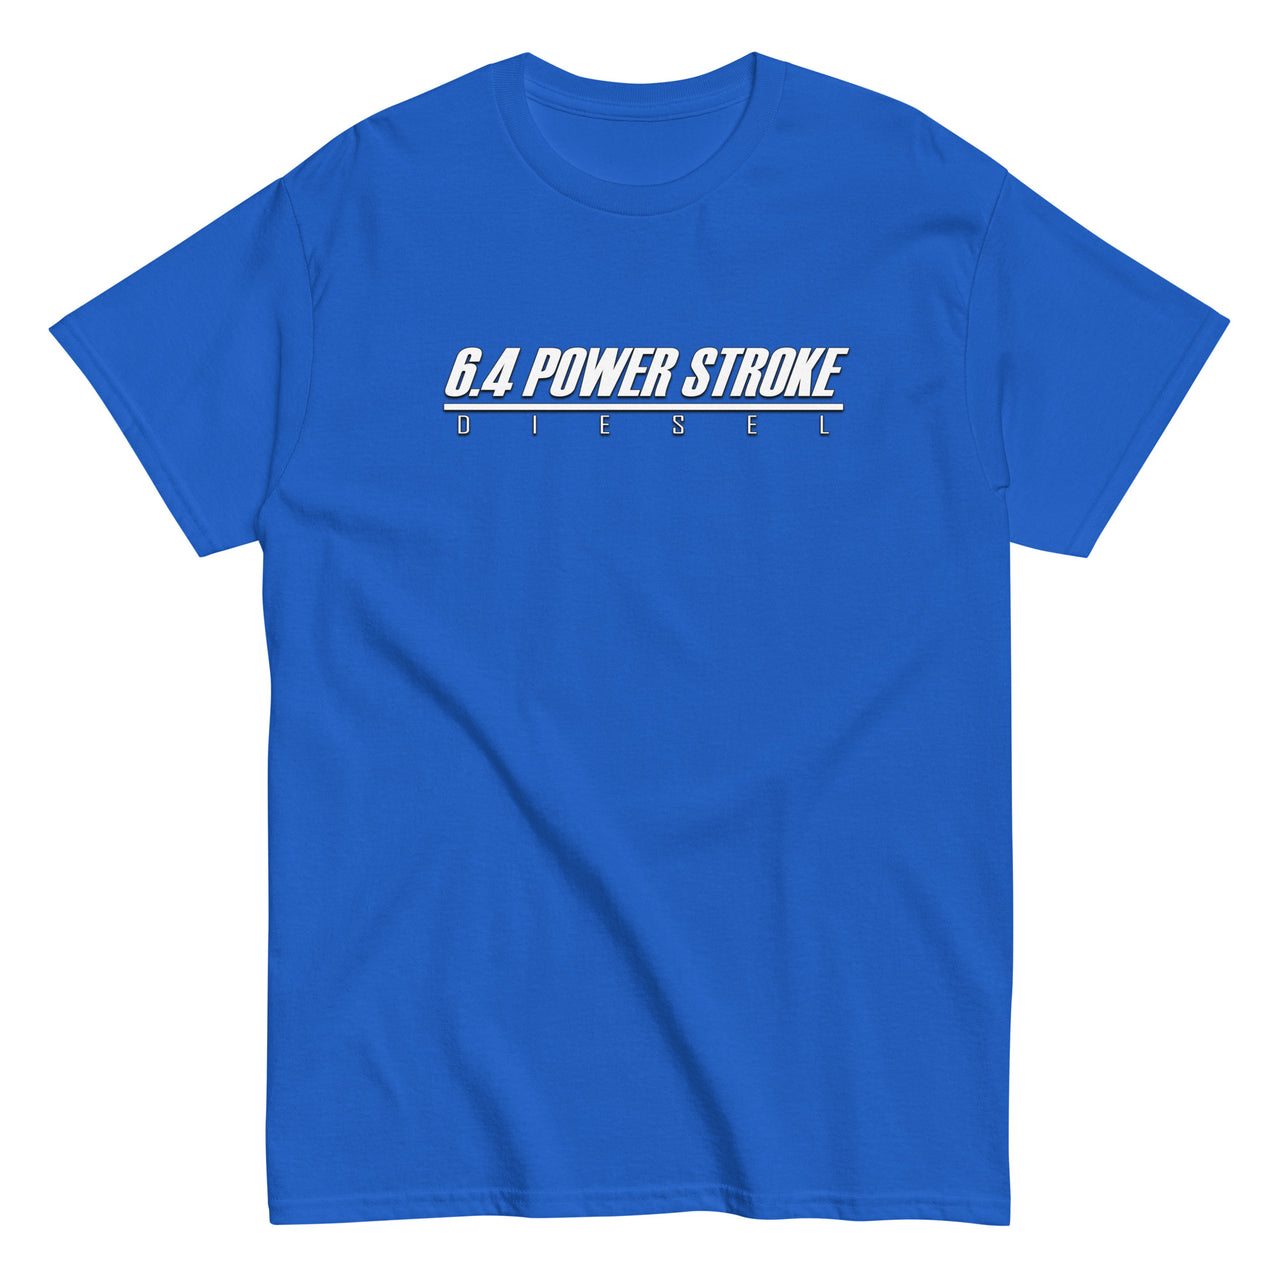 6.4 Power Stroke Trucks t-shirt in blue